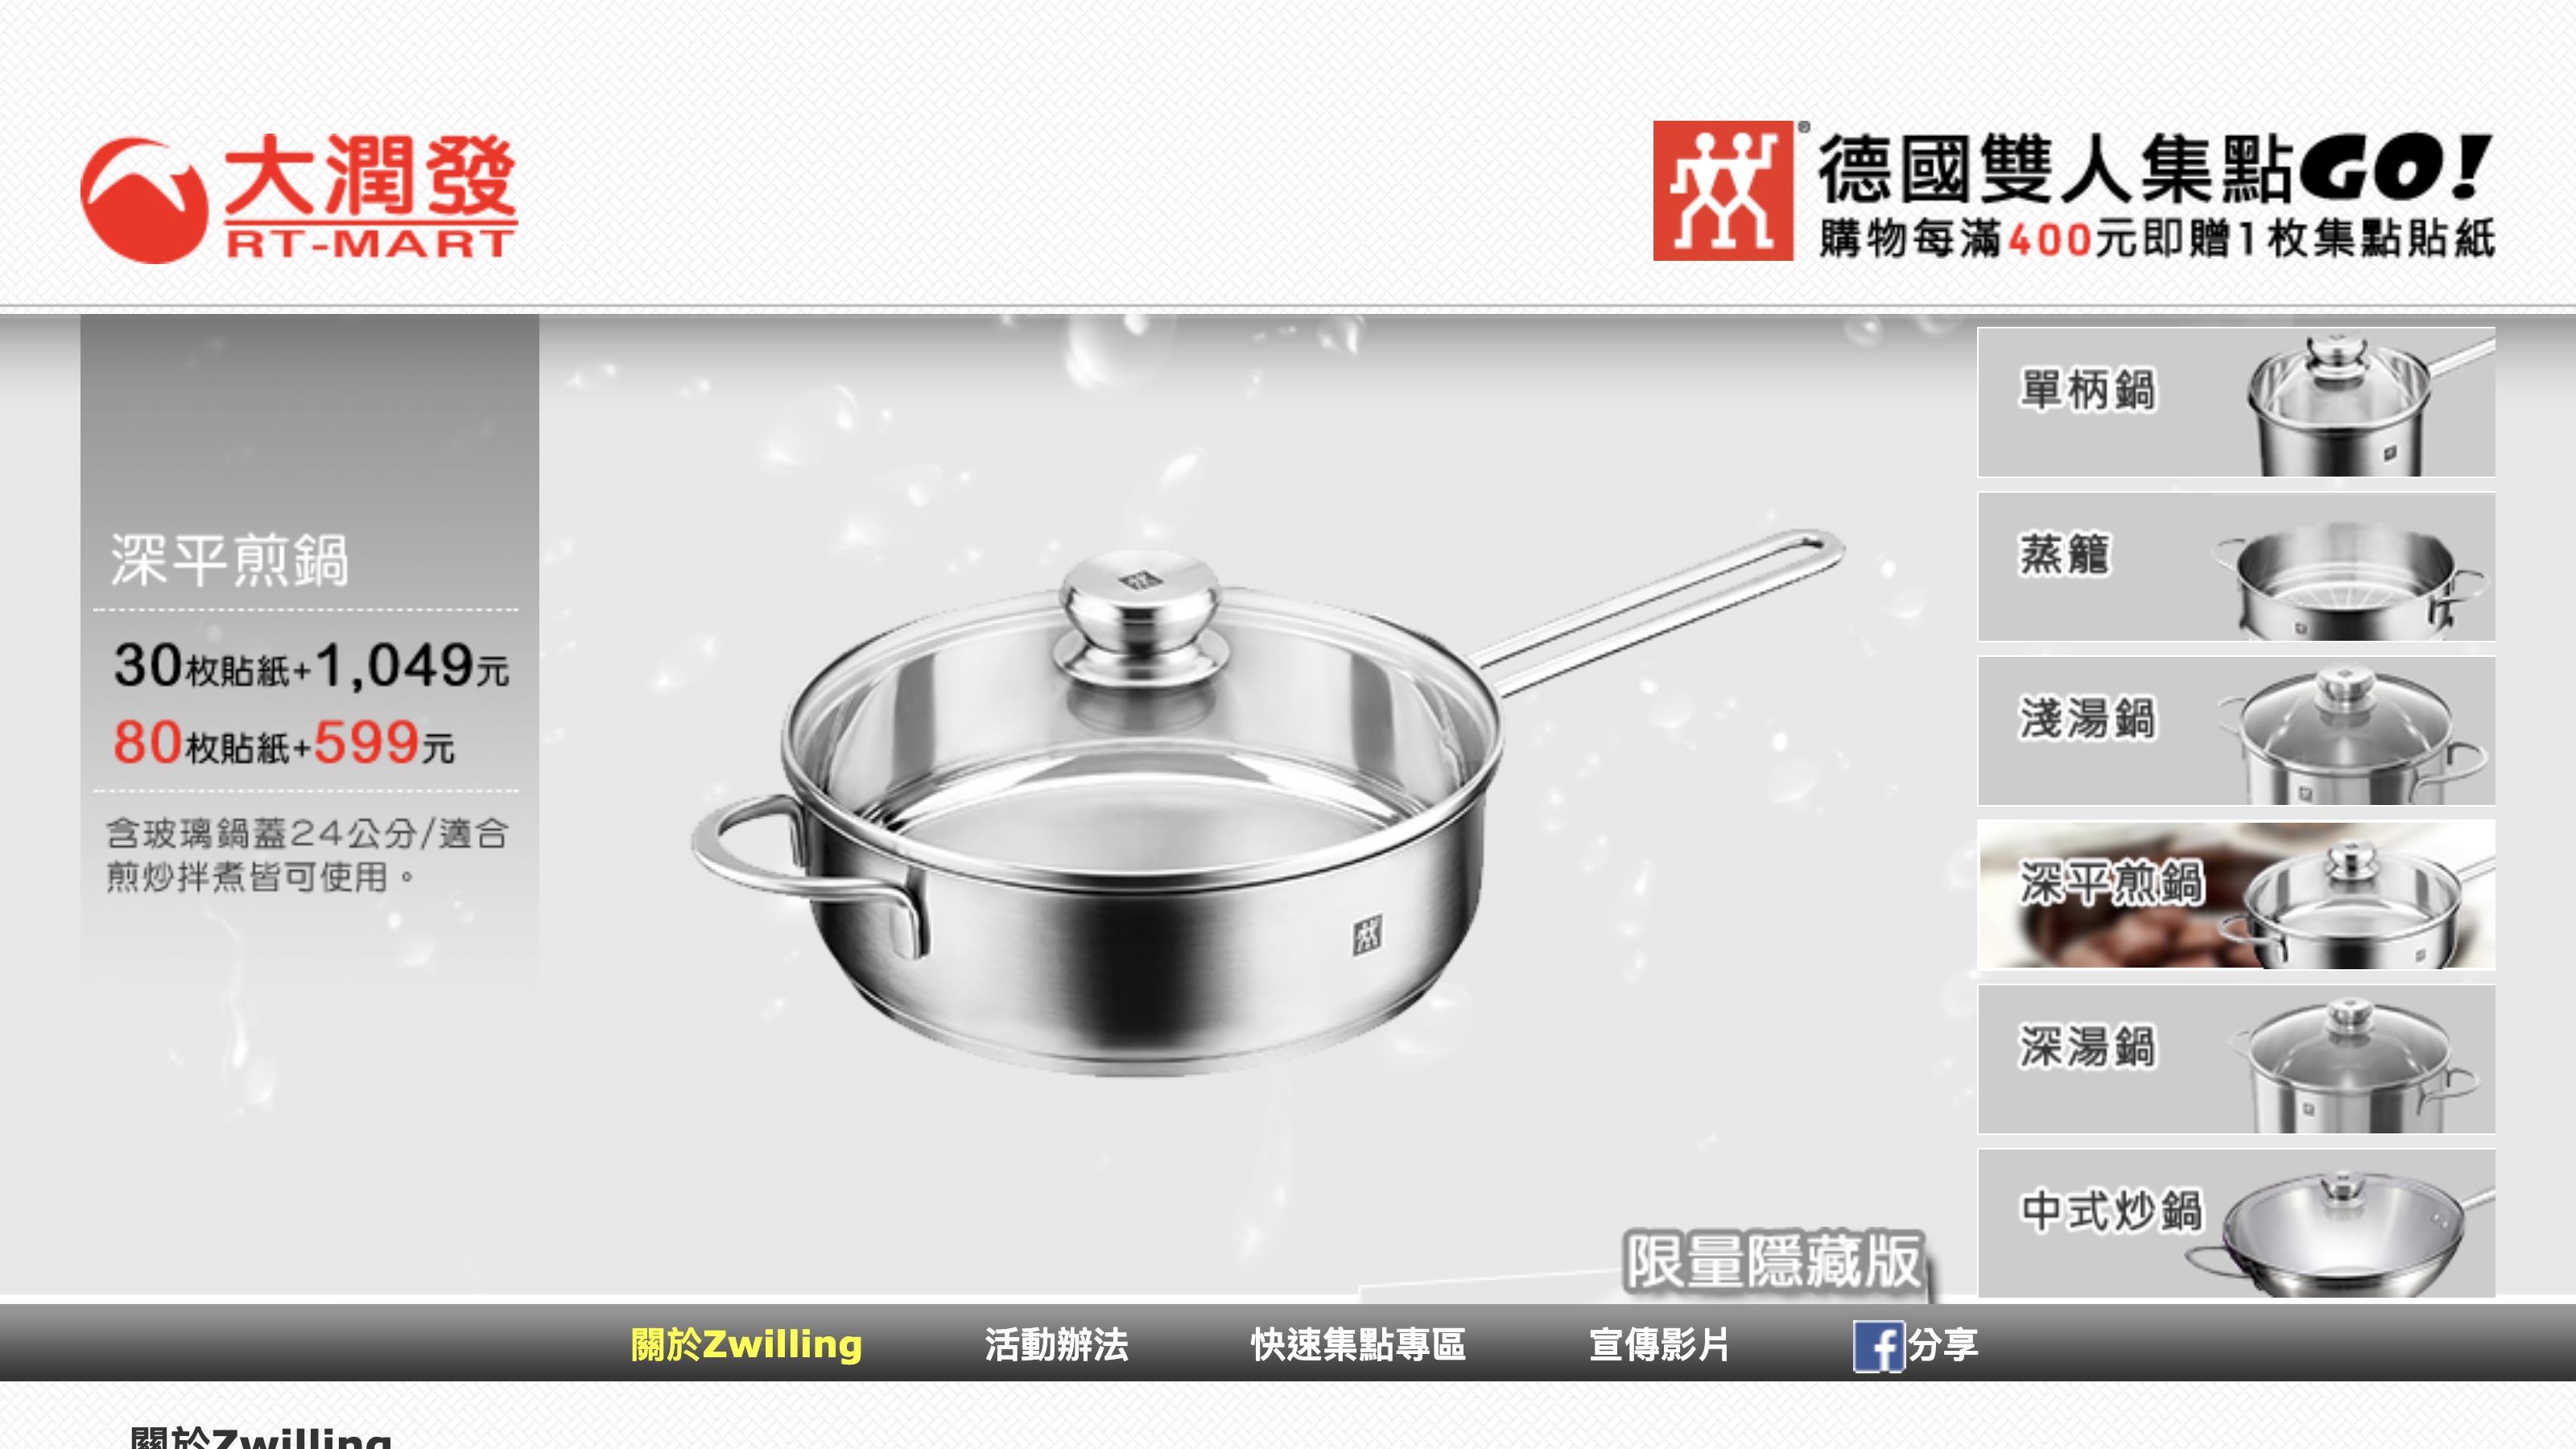 圖 請問我需要再買一個深平煎鍋嗎？